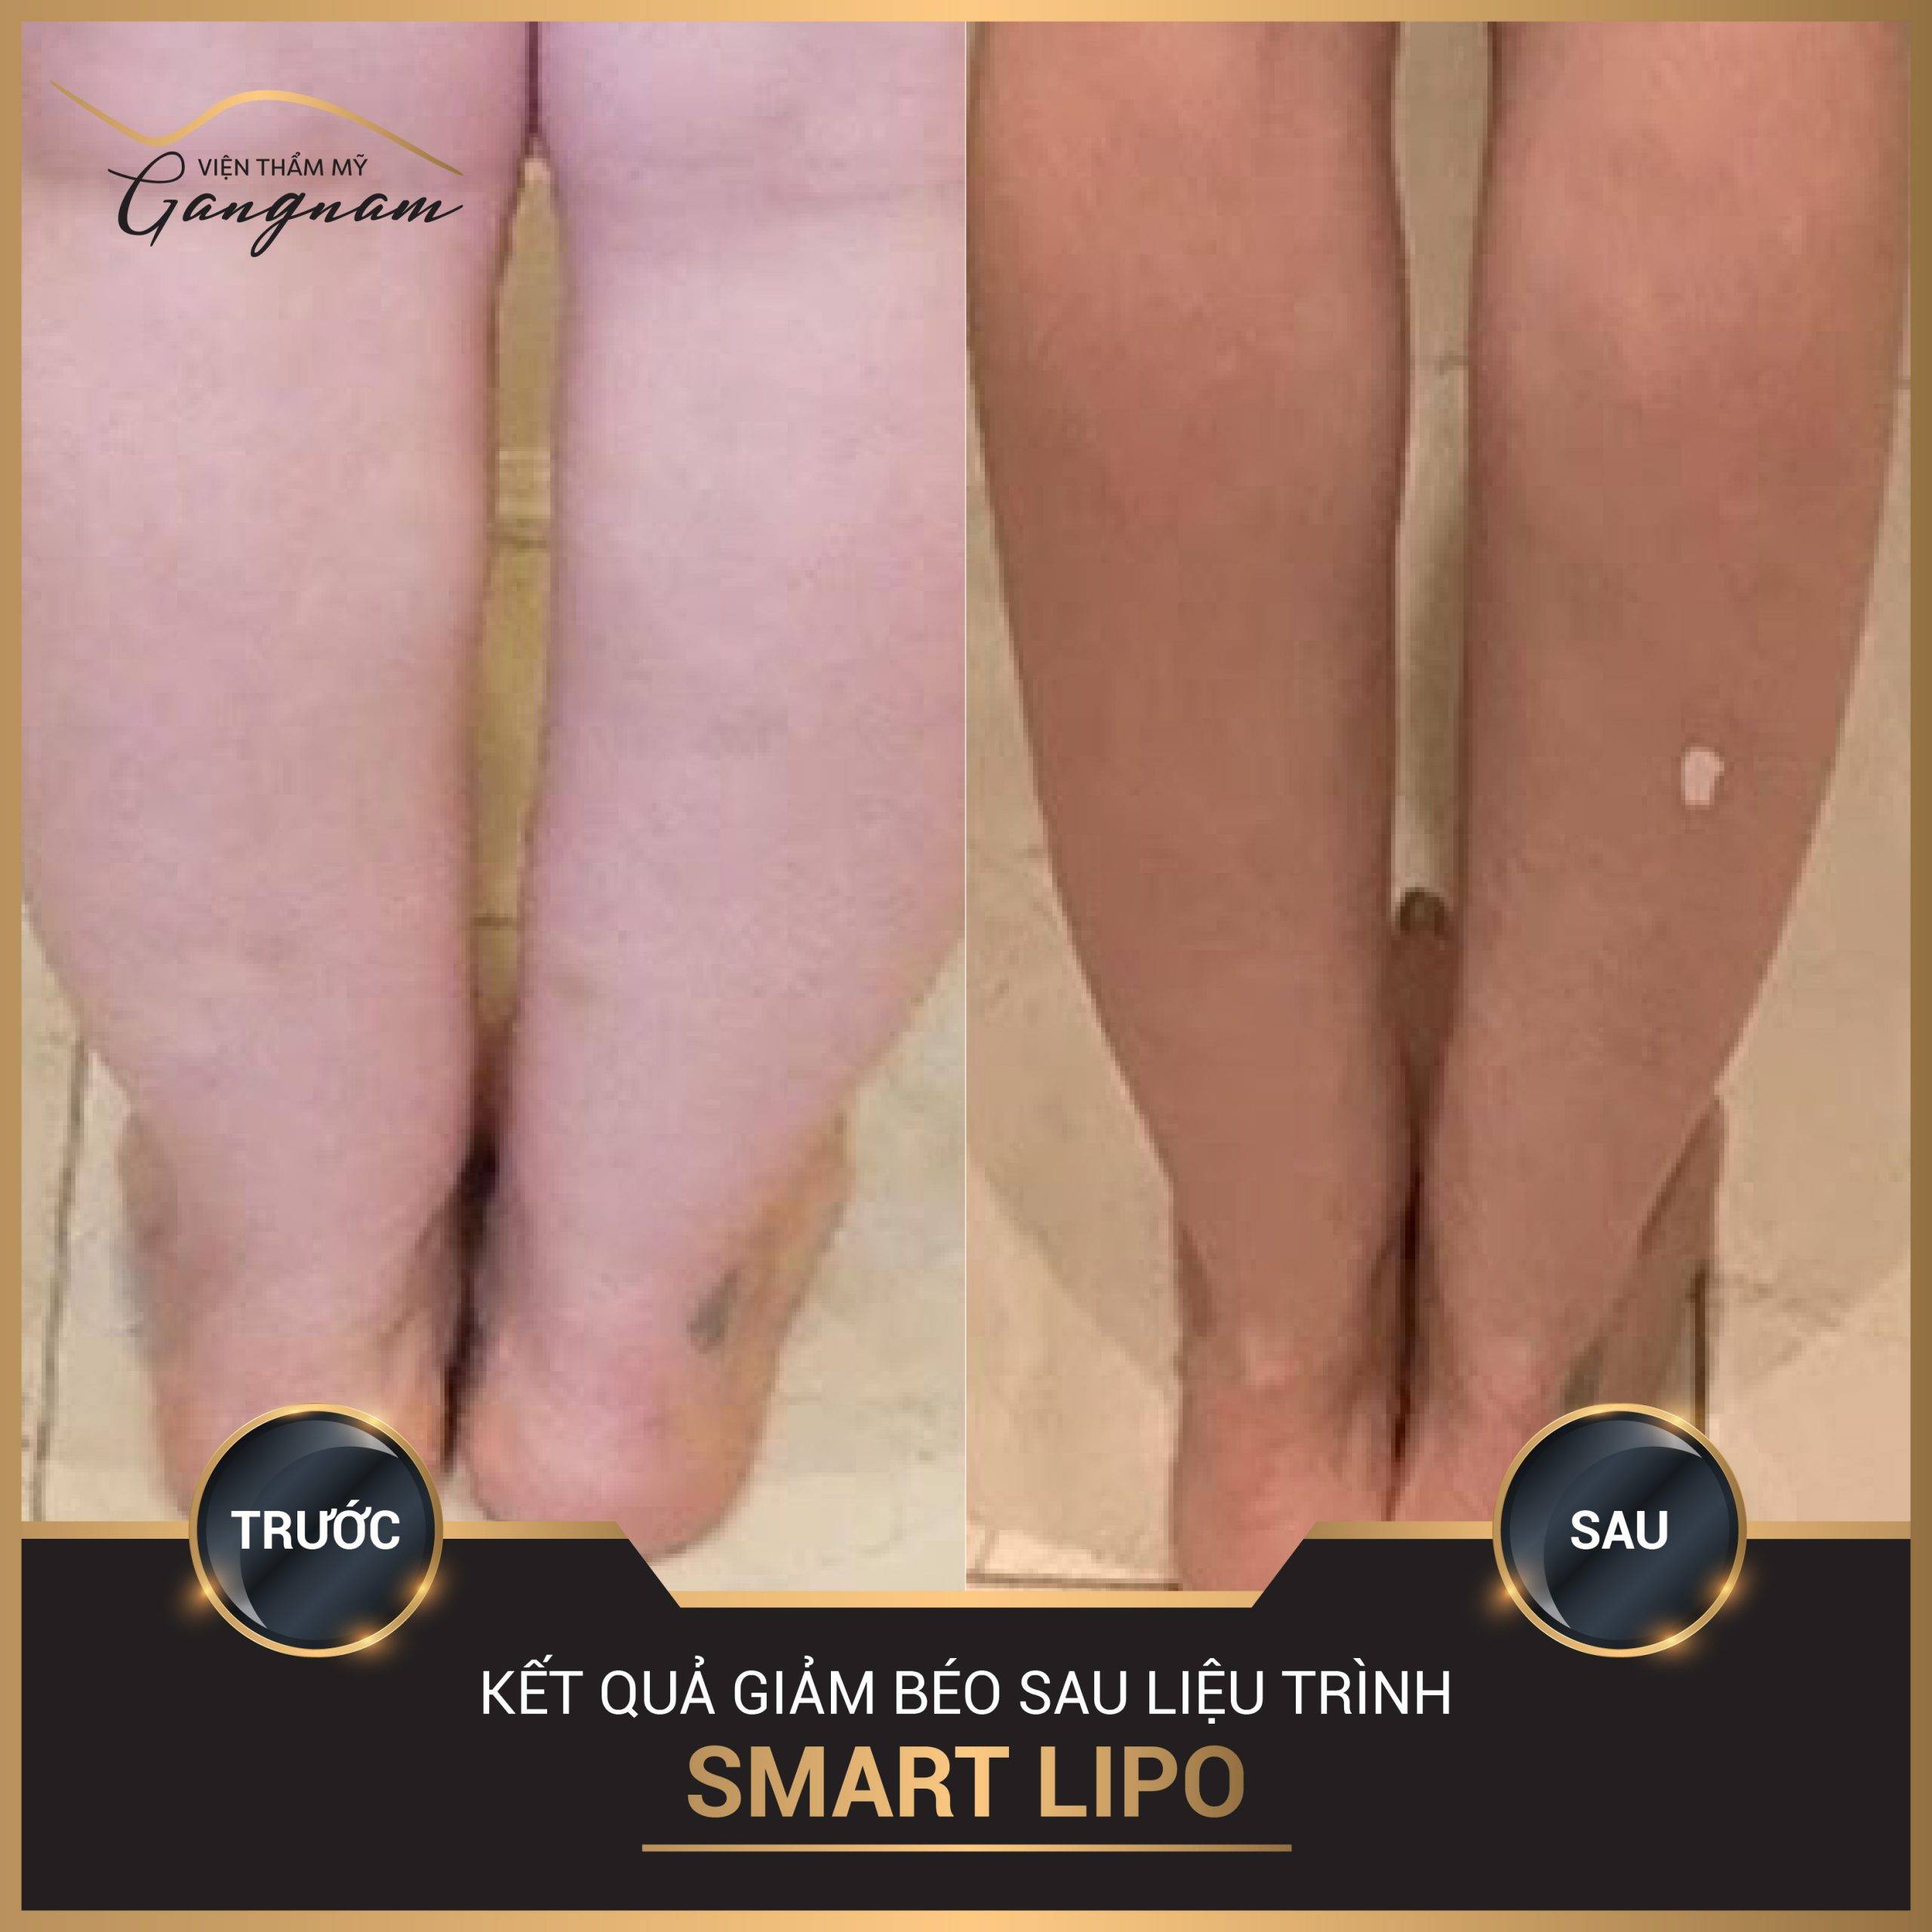 Hình ảnh kết quả sau 15 ngày giảm béo, giảm mỡ bắp chân với Smart Lipo